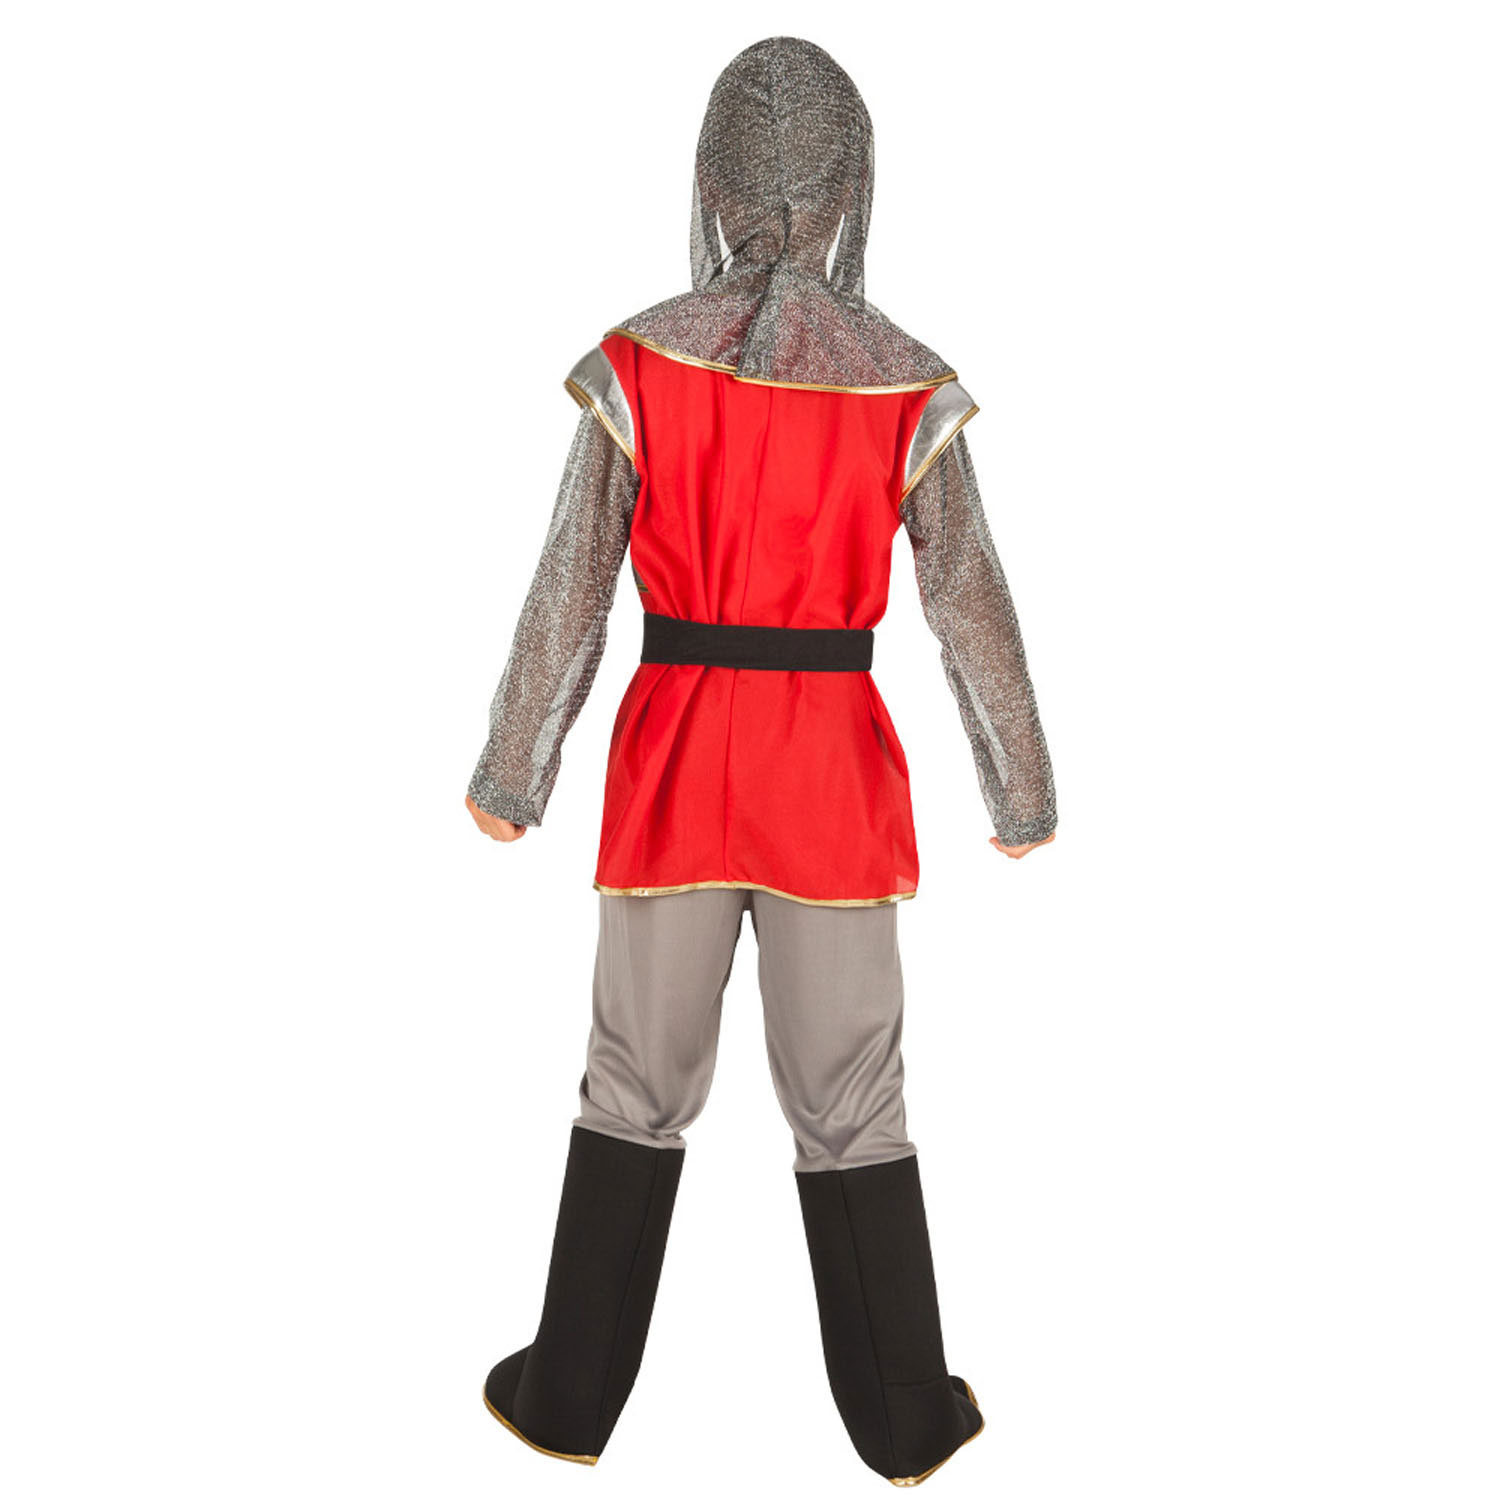 Costume de chevalier pour enfants, 4-6 ans